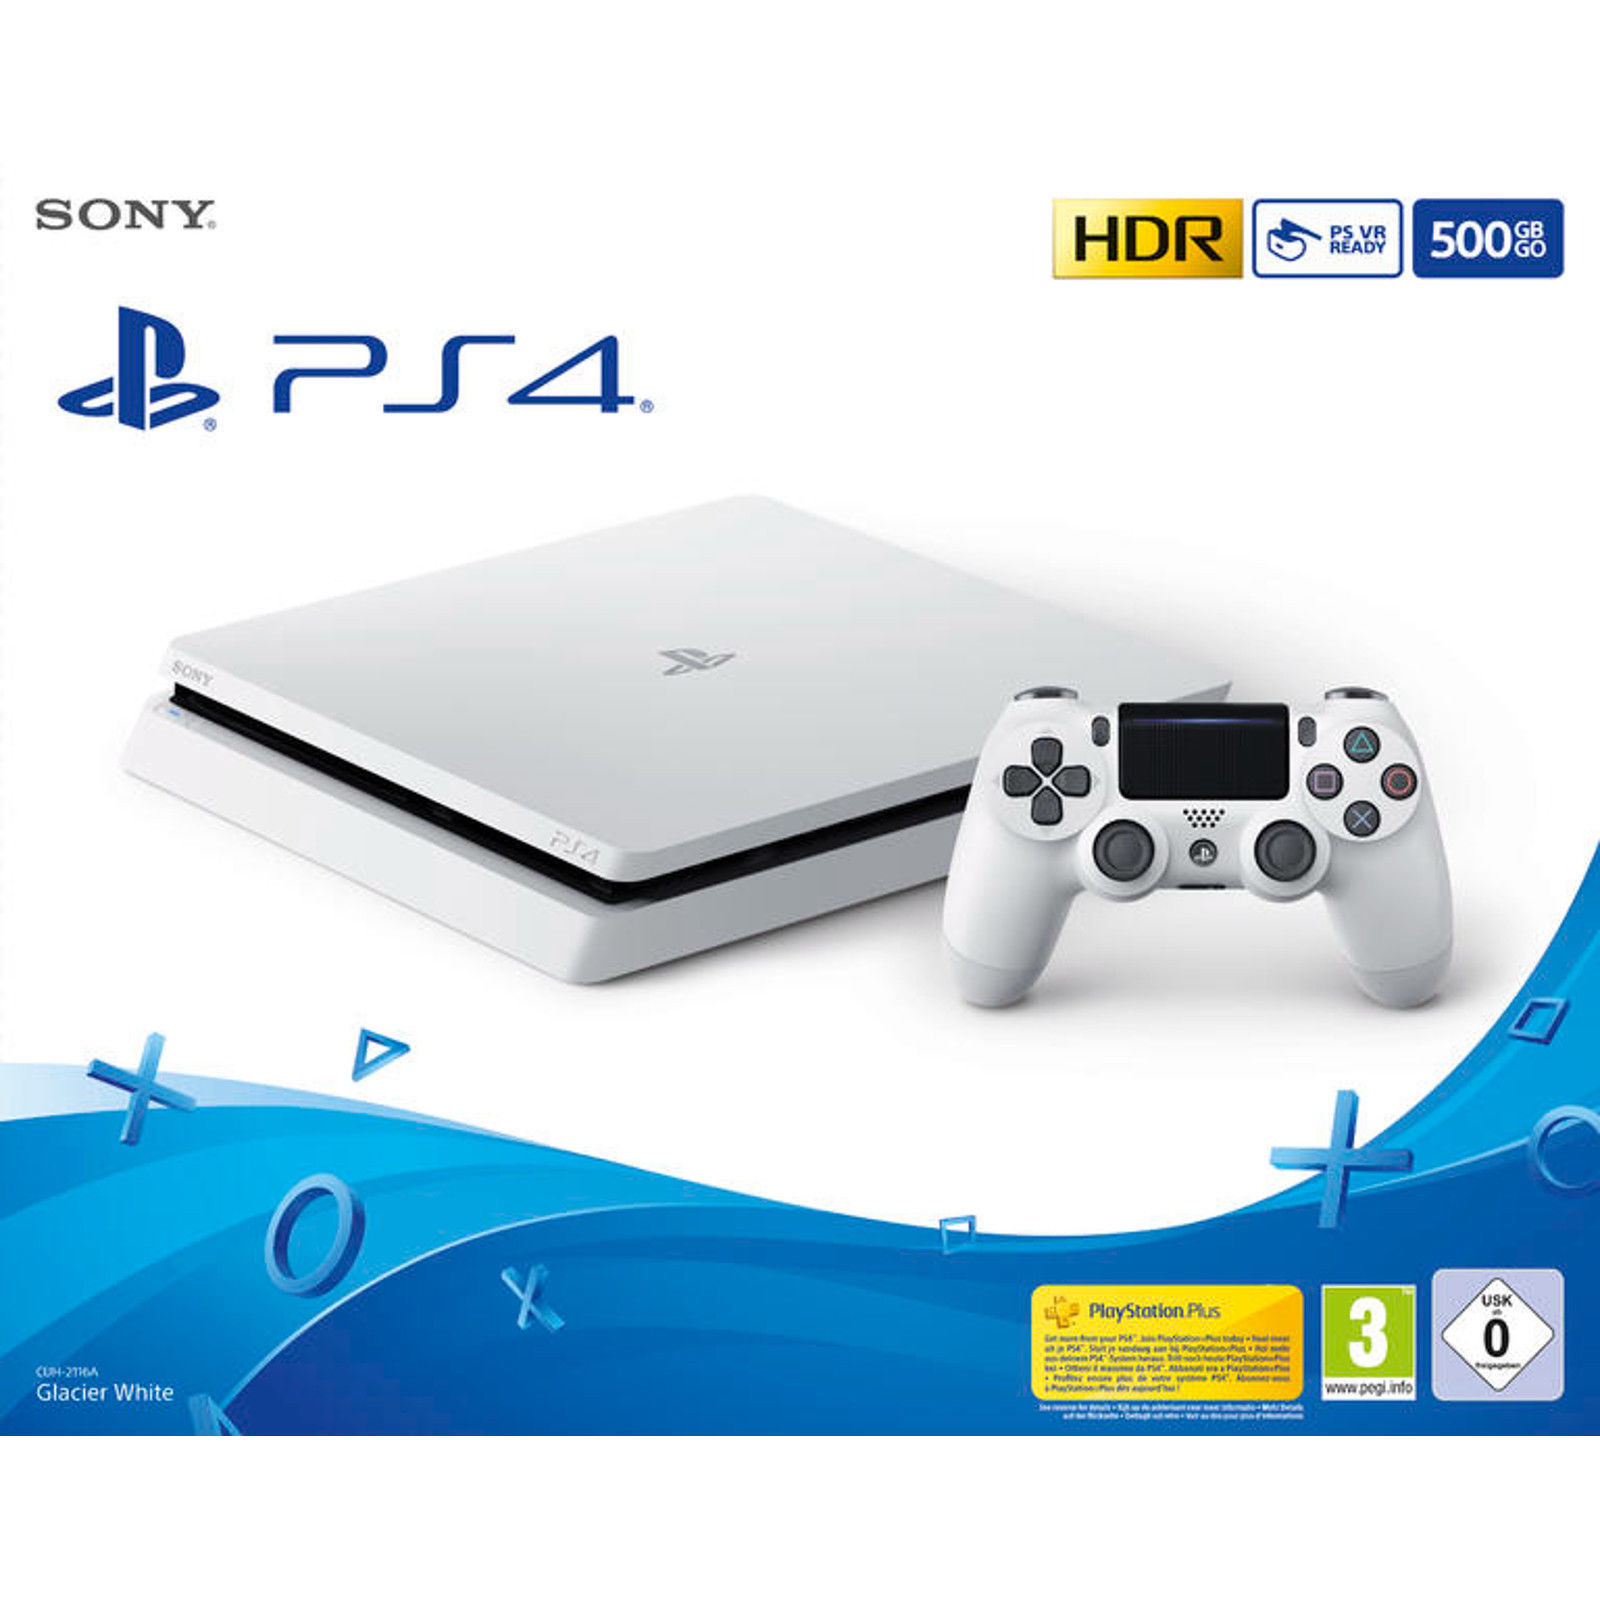 Sony PlayStation 4 Slim PS4 Konsole 500GB Slim Weiß  CUH - 2116A  *NEU&OVP*